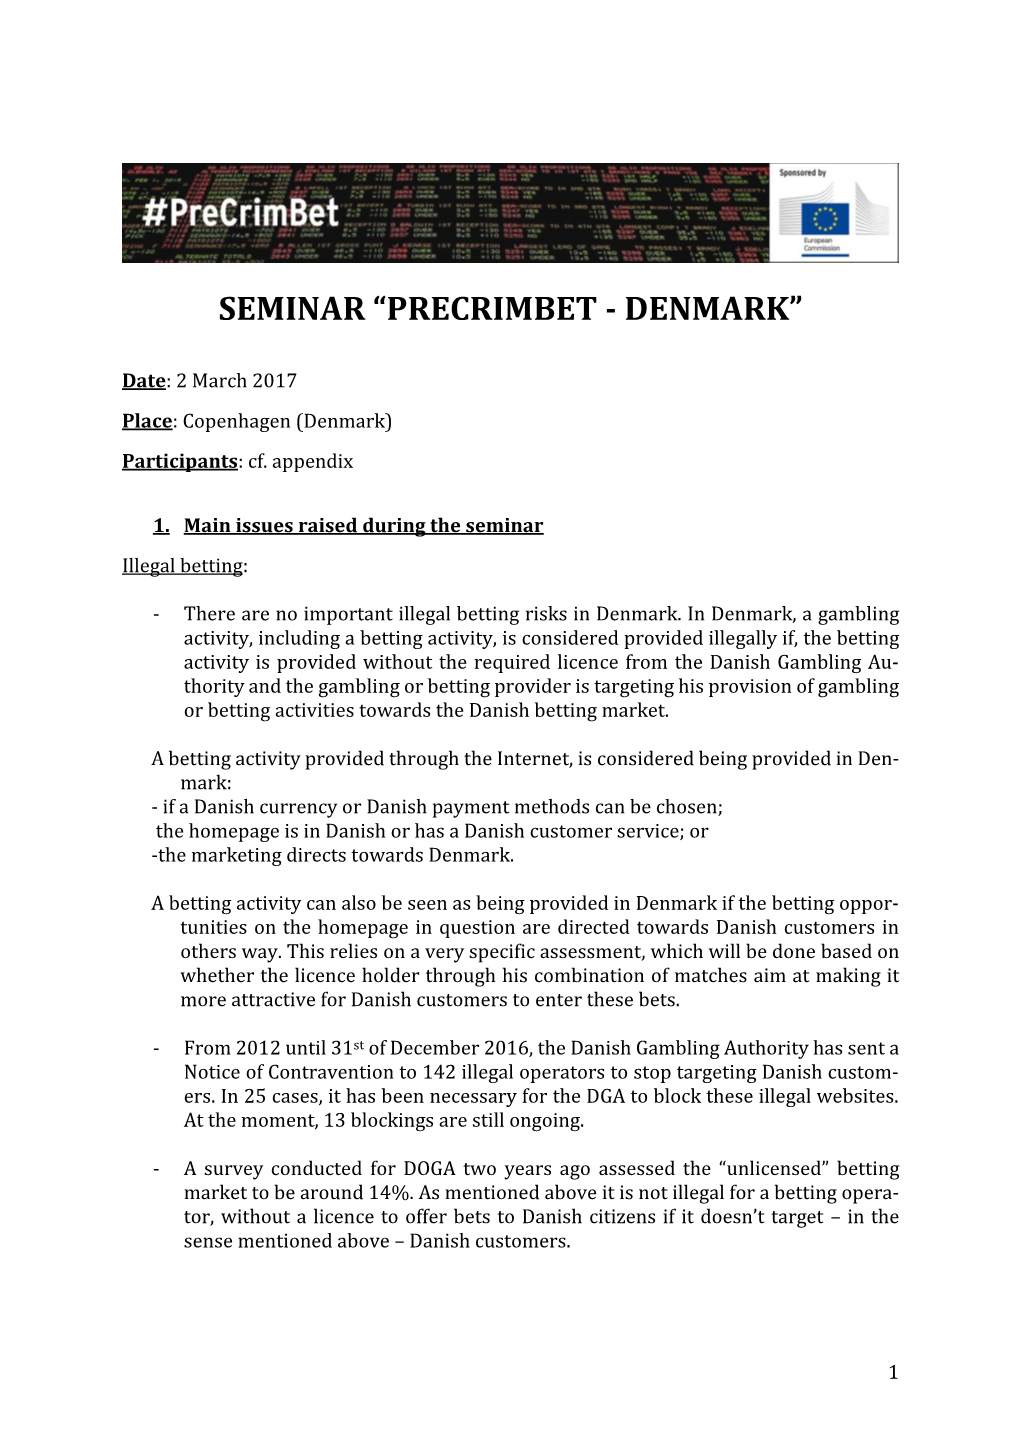 Seminar “Precrimbet - Denmark”